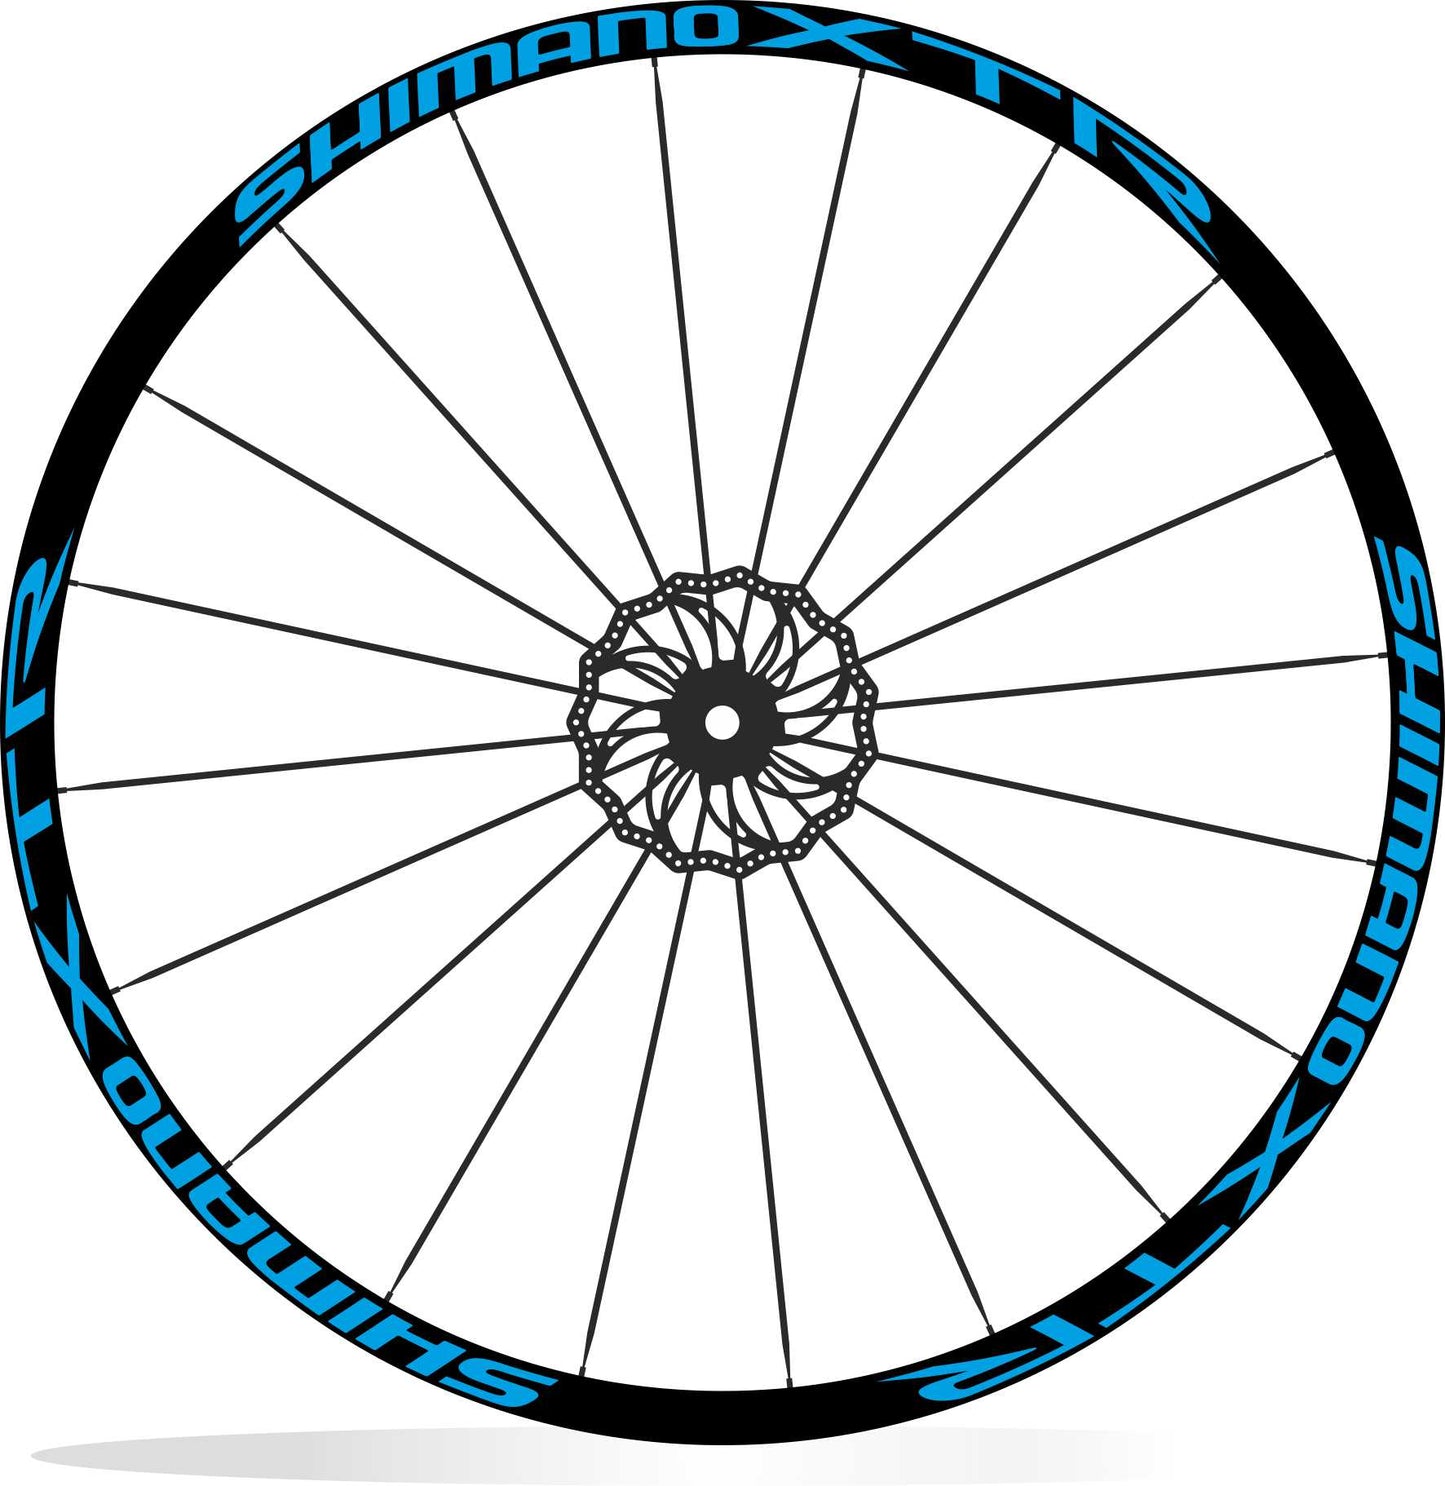 Shimano XTR adesivi cerchi bici mtb sticker personalizzati